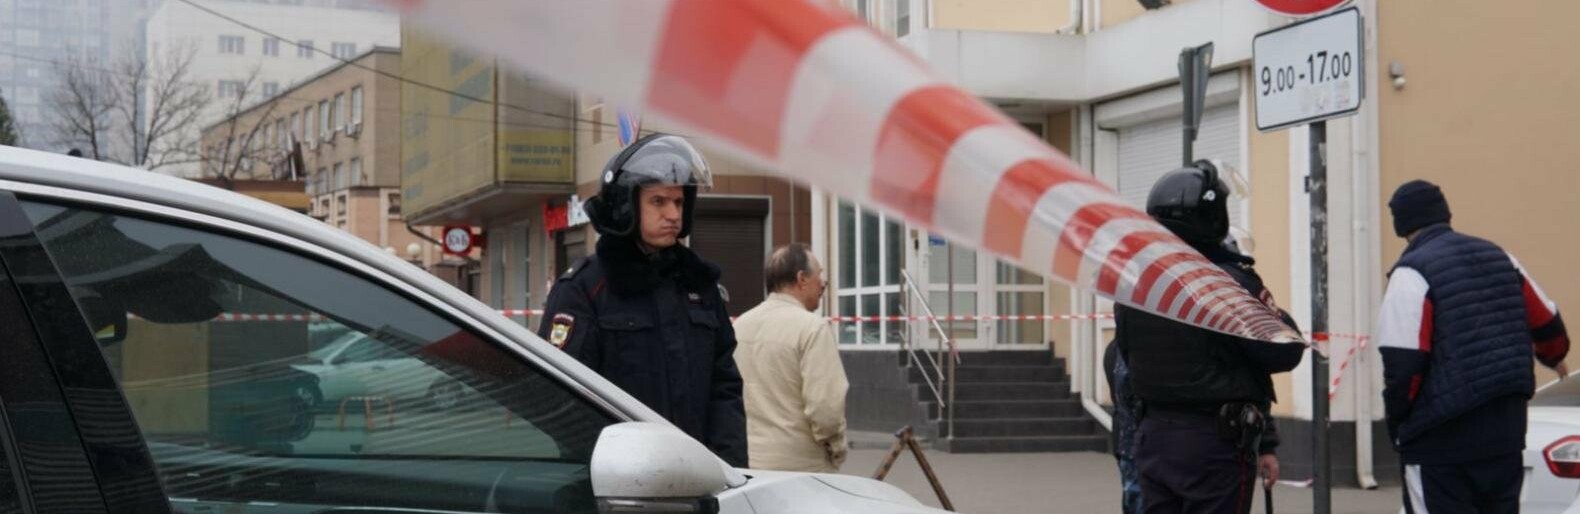 Число погибших при пожаре в здании погрануправления ФСБ в Ростове увеличилось до трёх